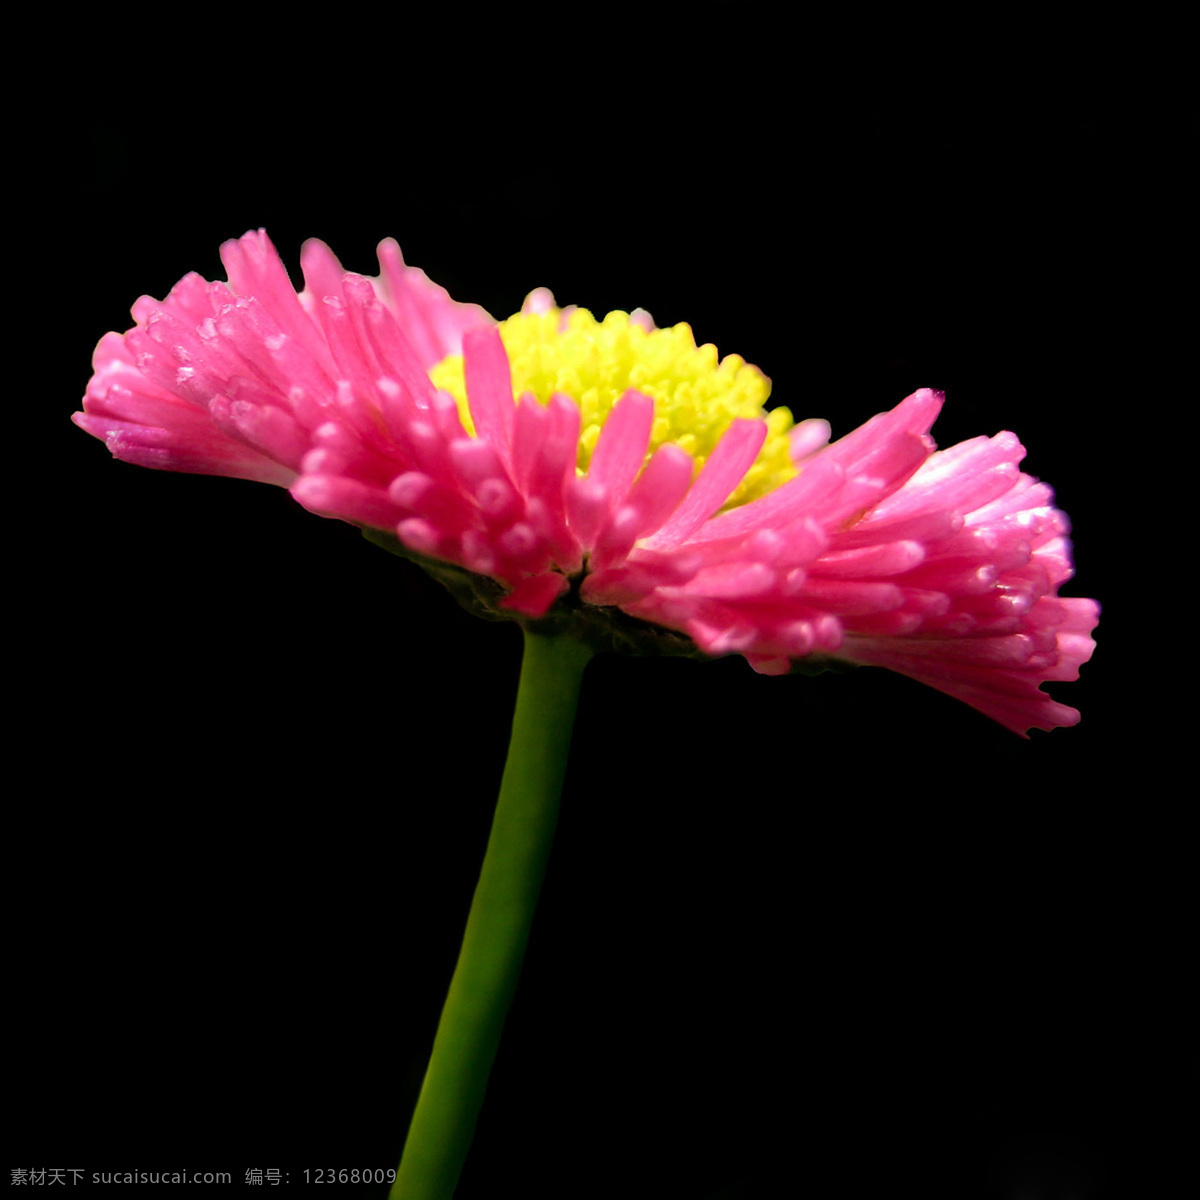 位图 植物摄影 写实花卉 花朵 菊花 免费素材 面料图库 服装图案 黑色